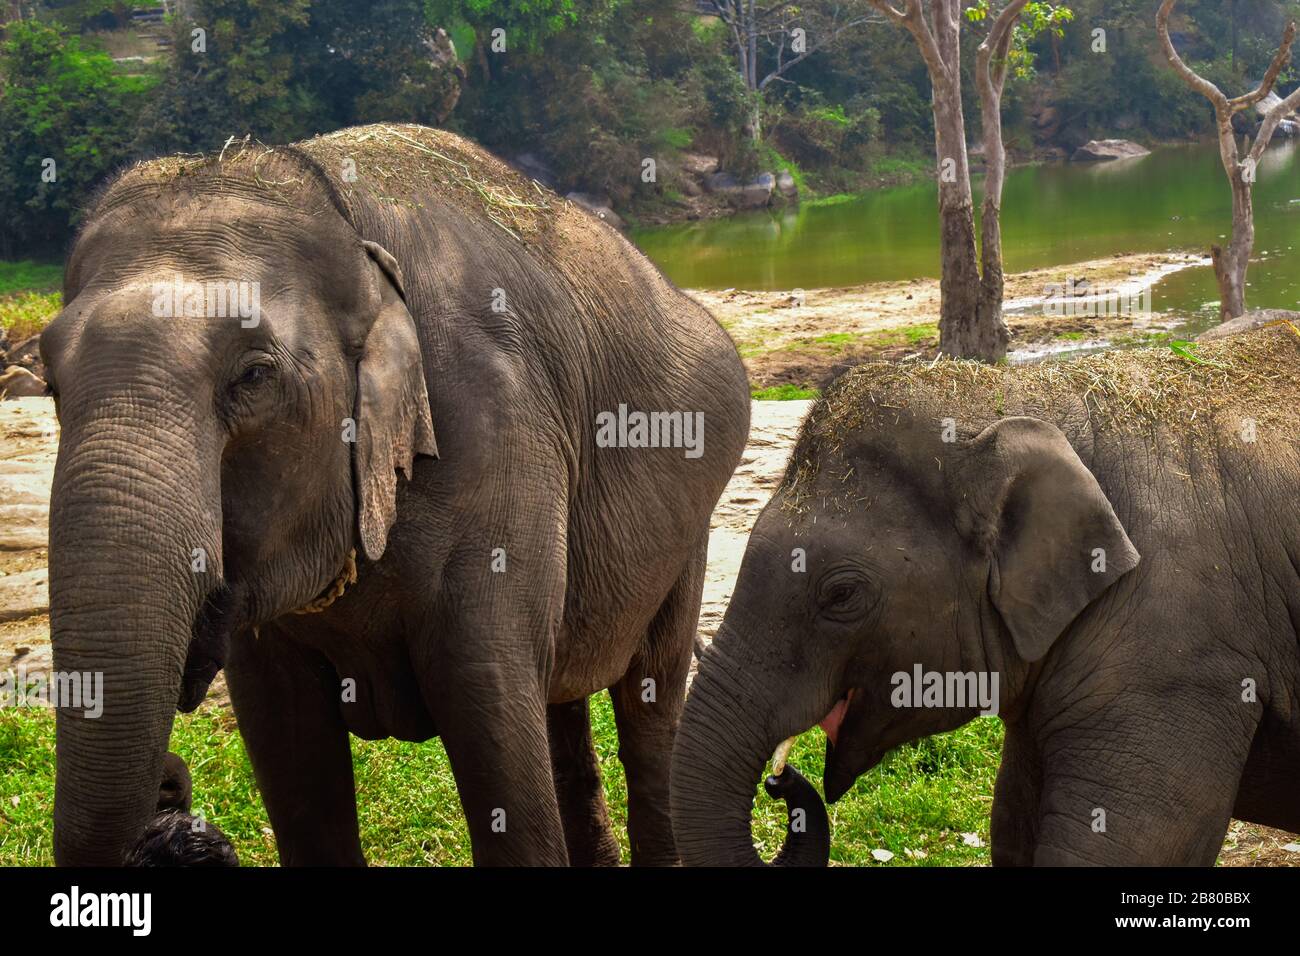 un elefante está caminando con su hijo travieso en un bosque. fotografía de la fauna silvestre Foto de stock